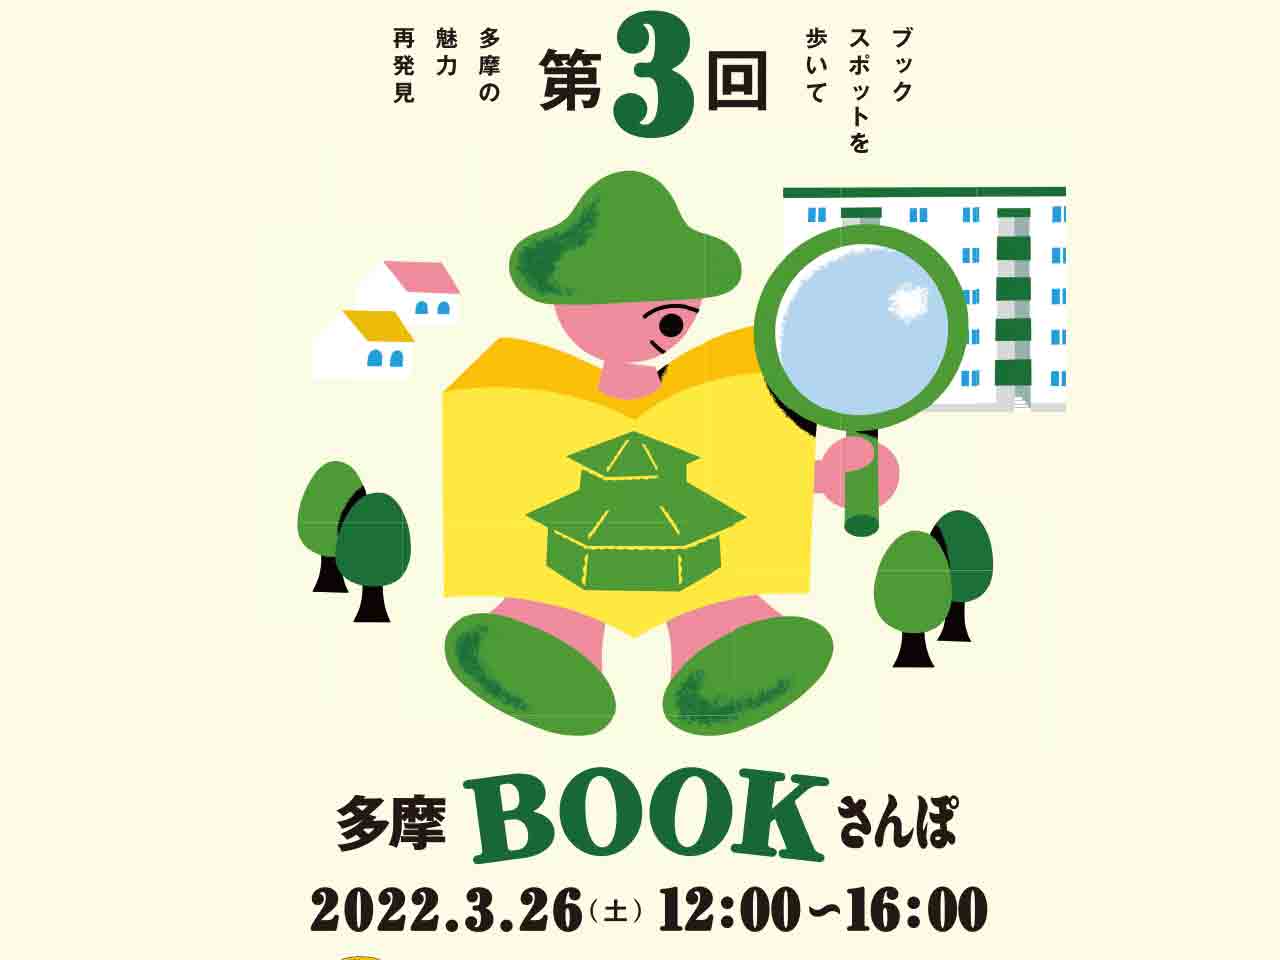 オススメの本を交換してつながろう♪『第３回多摩BOOKさんぽ』が貝取・豊ヶ丘エリアで3/26開催